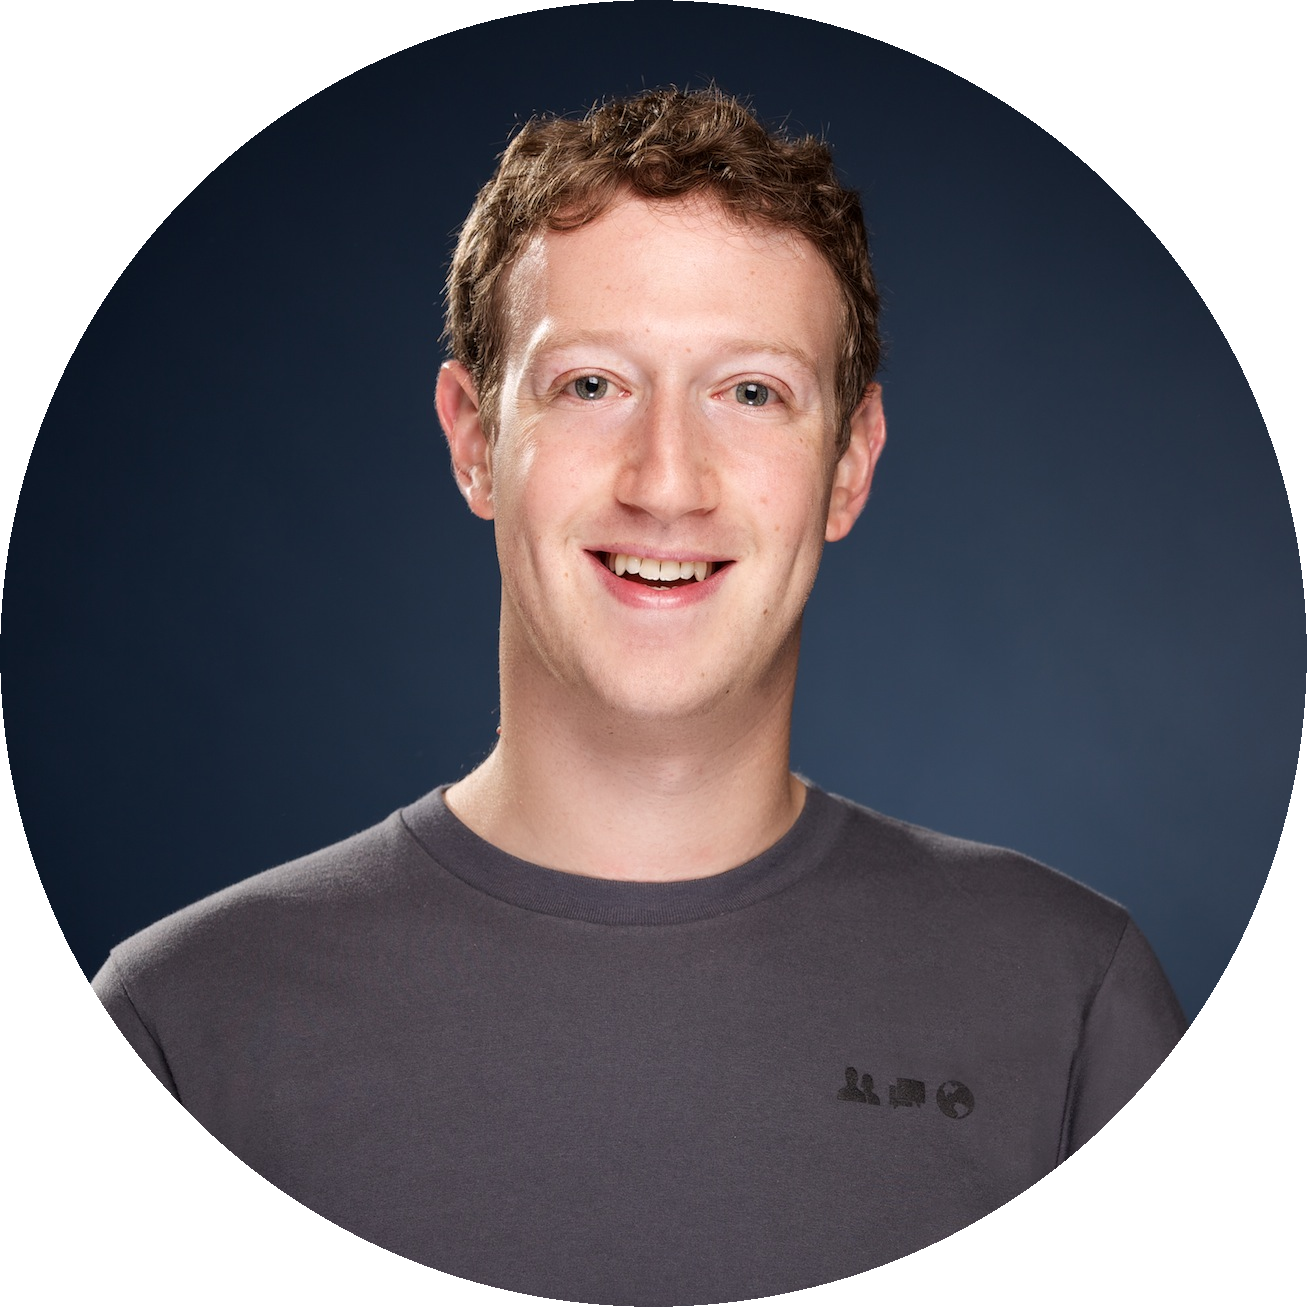 Mark Zuckerberg PNG images Download 